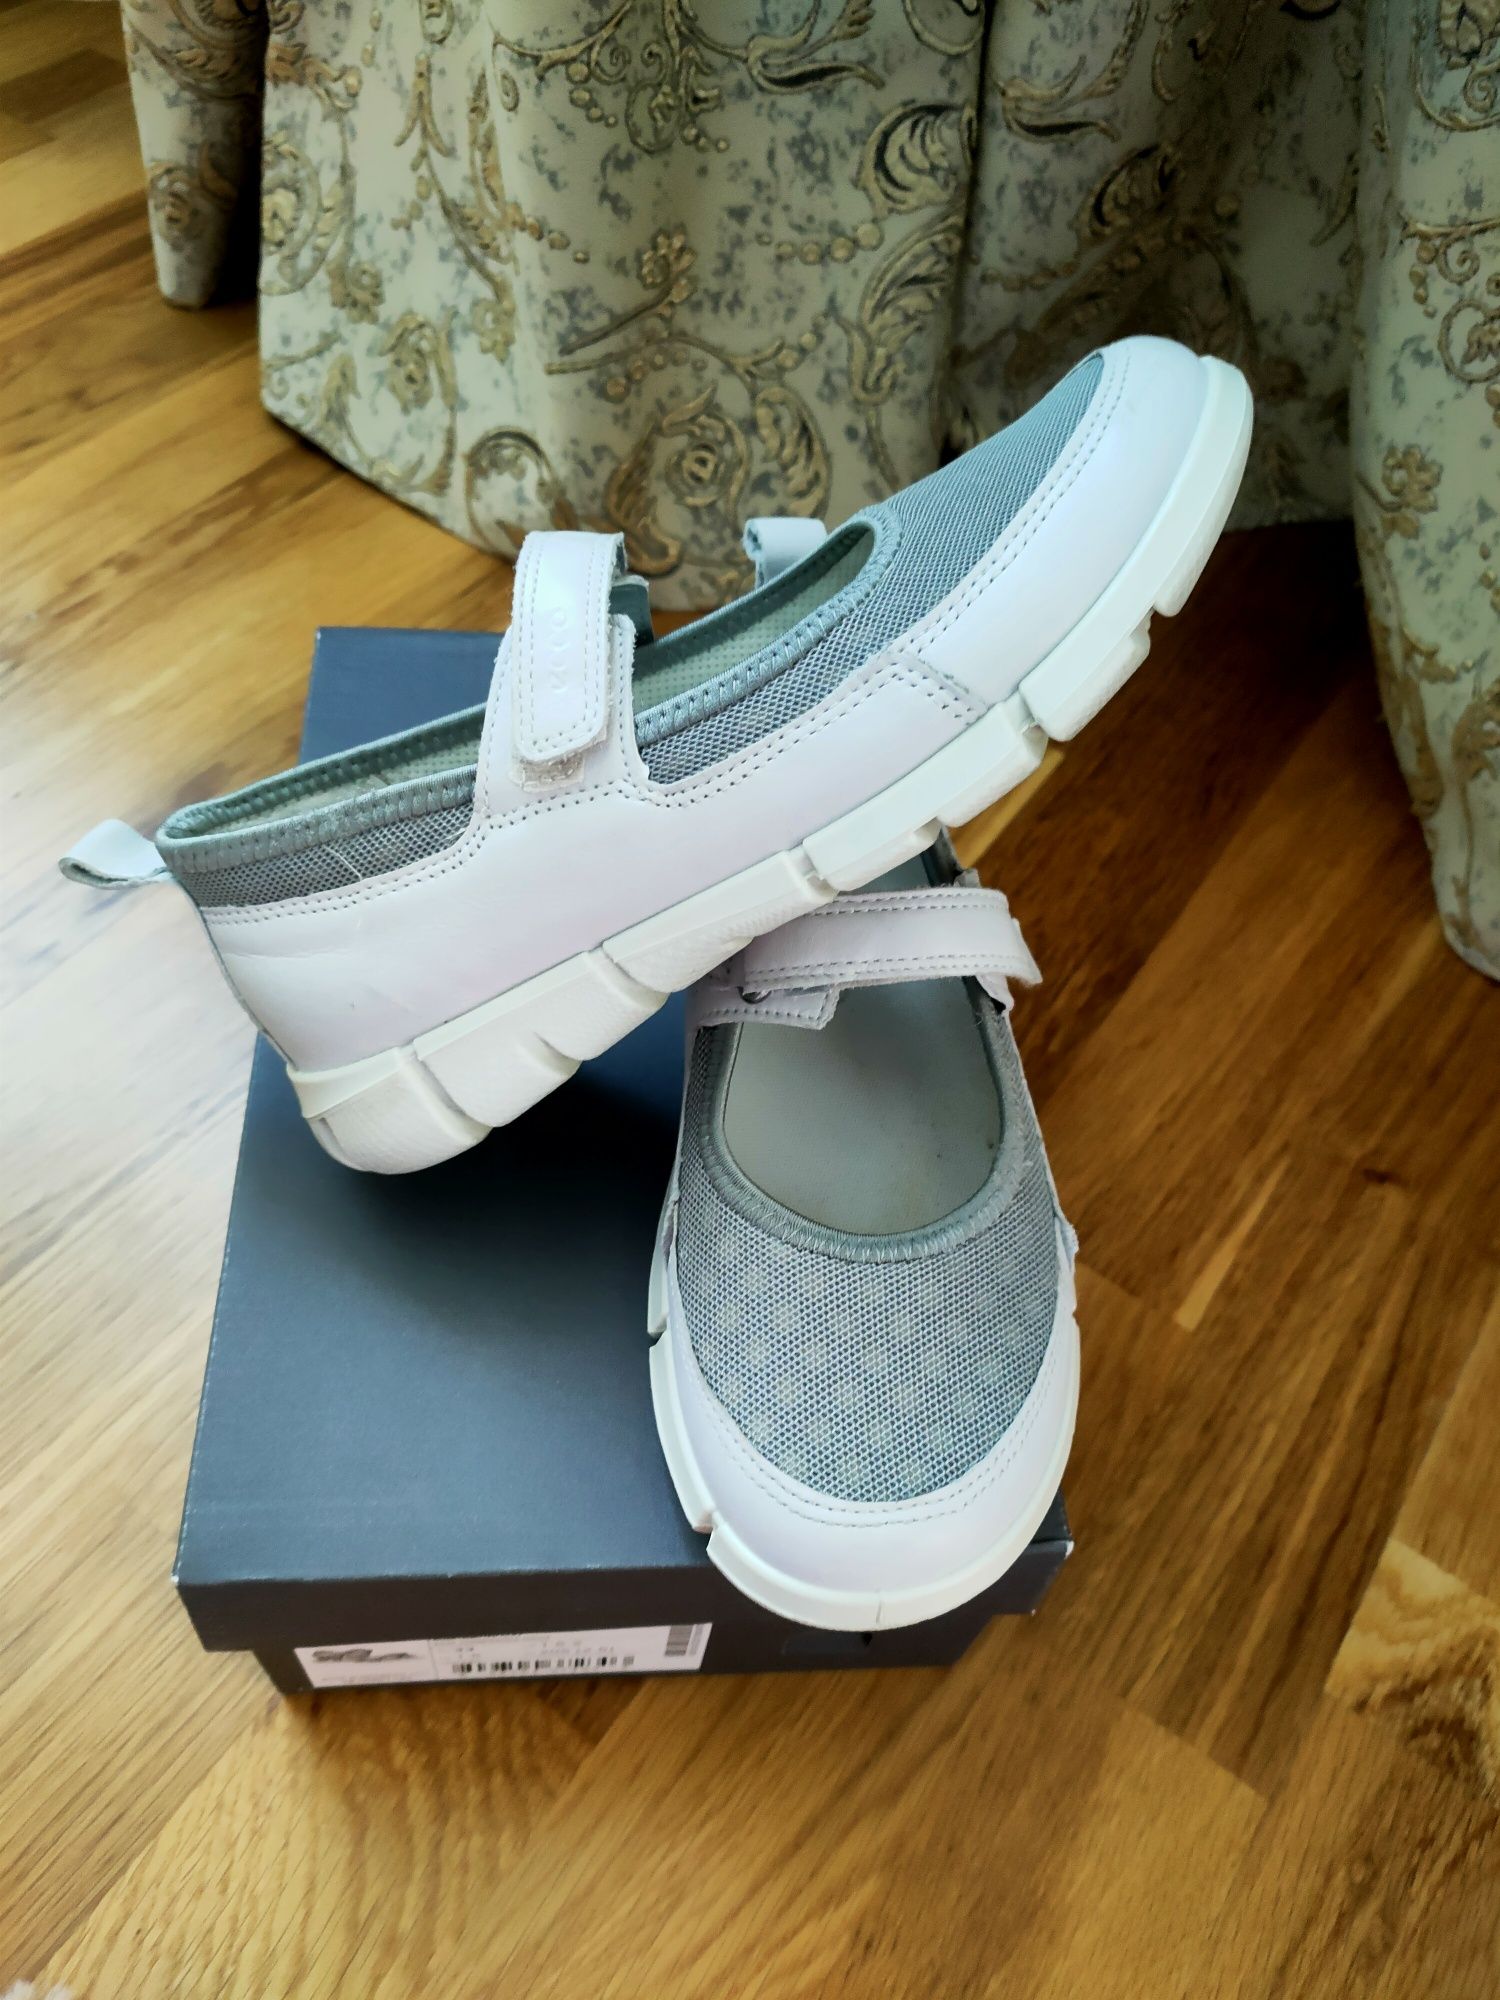 Sandale, papuci, Zara ecco, next mărimea 33